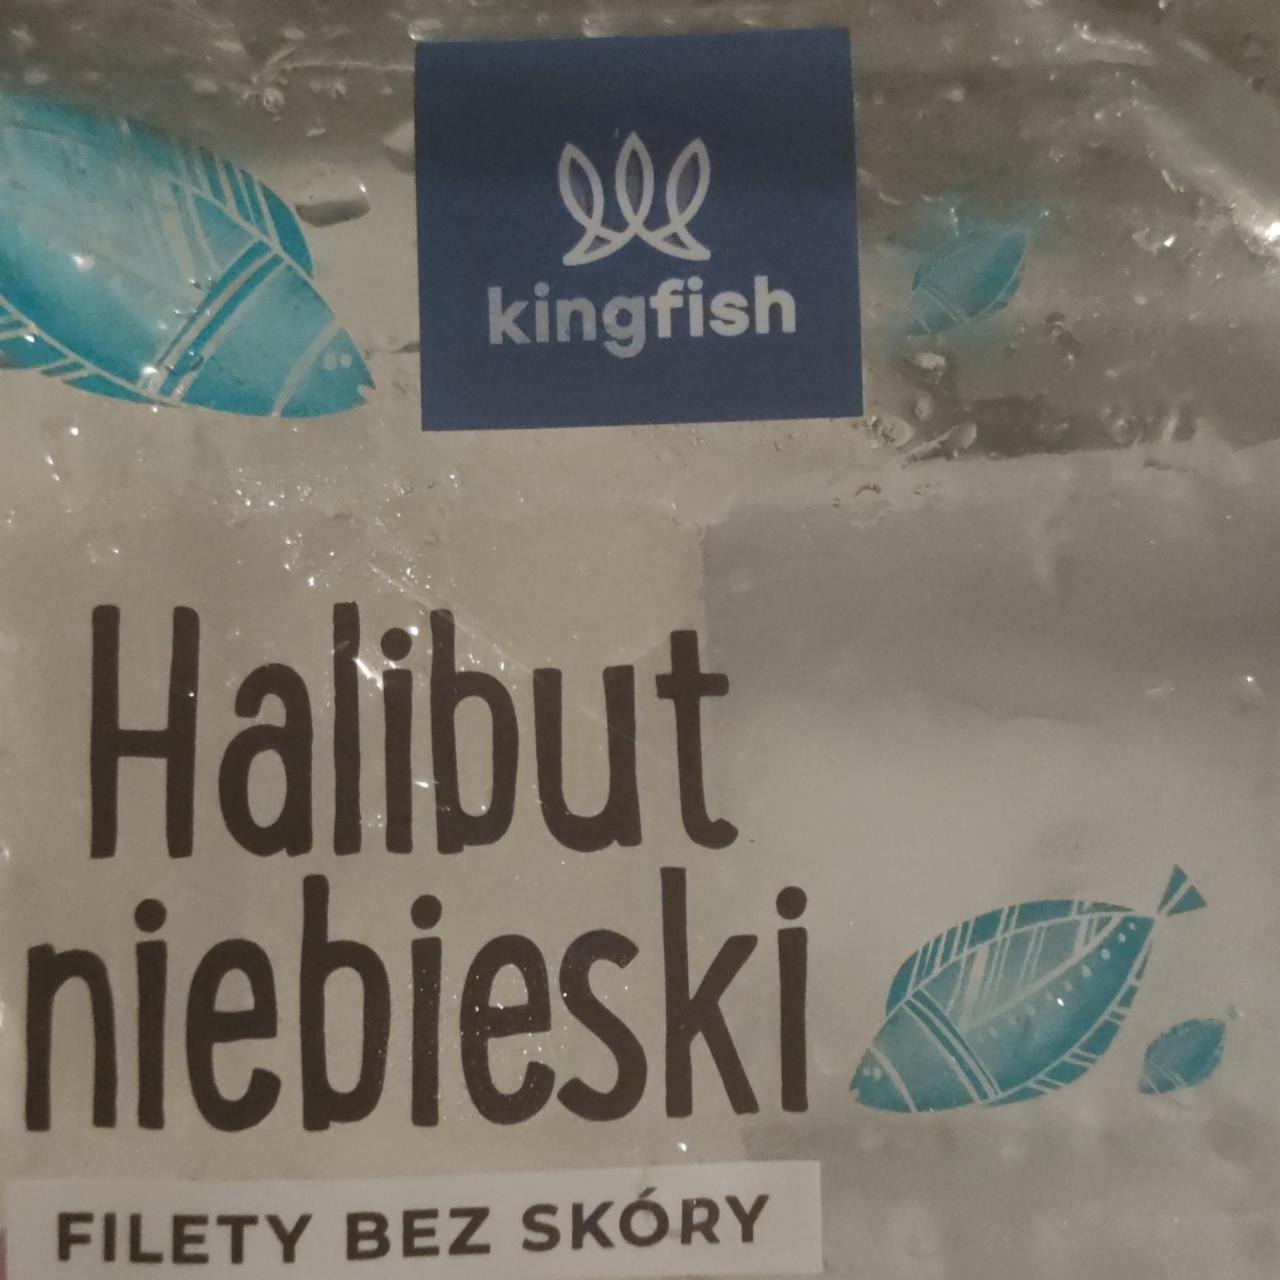 Zdjęcia - Halibut niebieski filety bez skóry kingfish